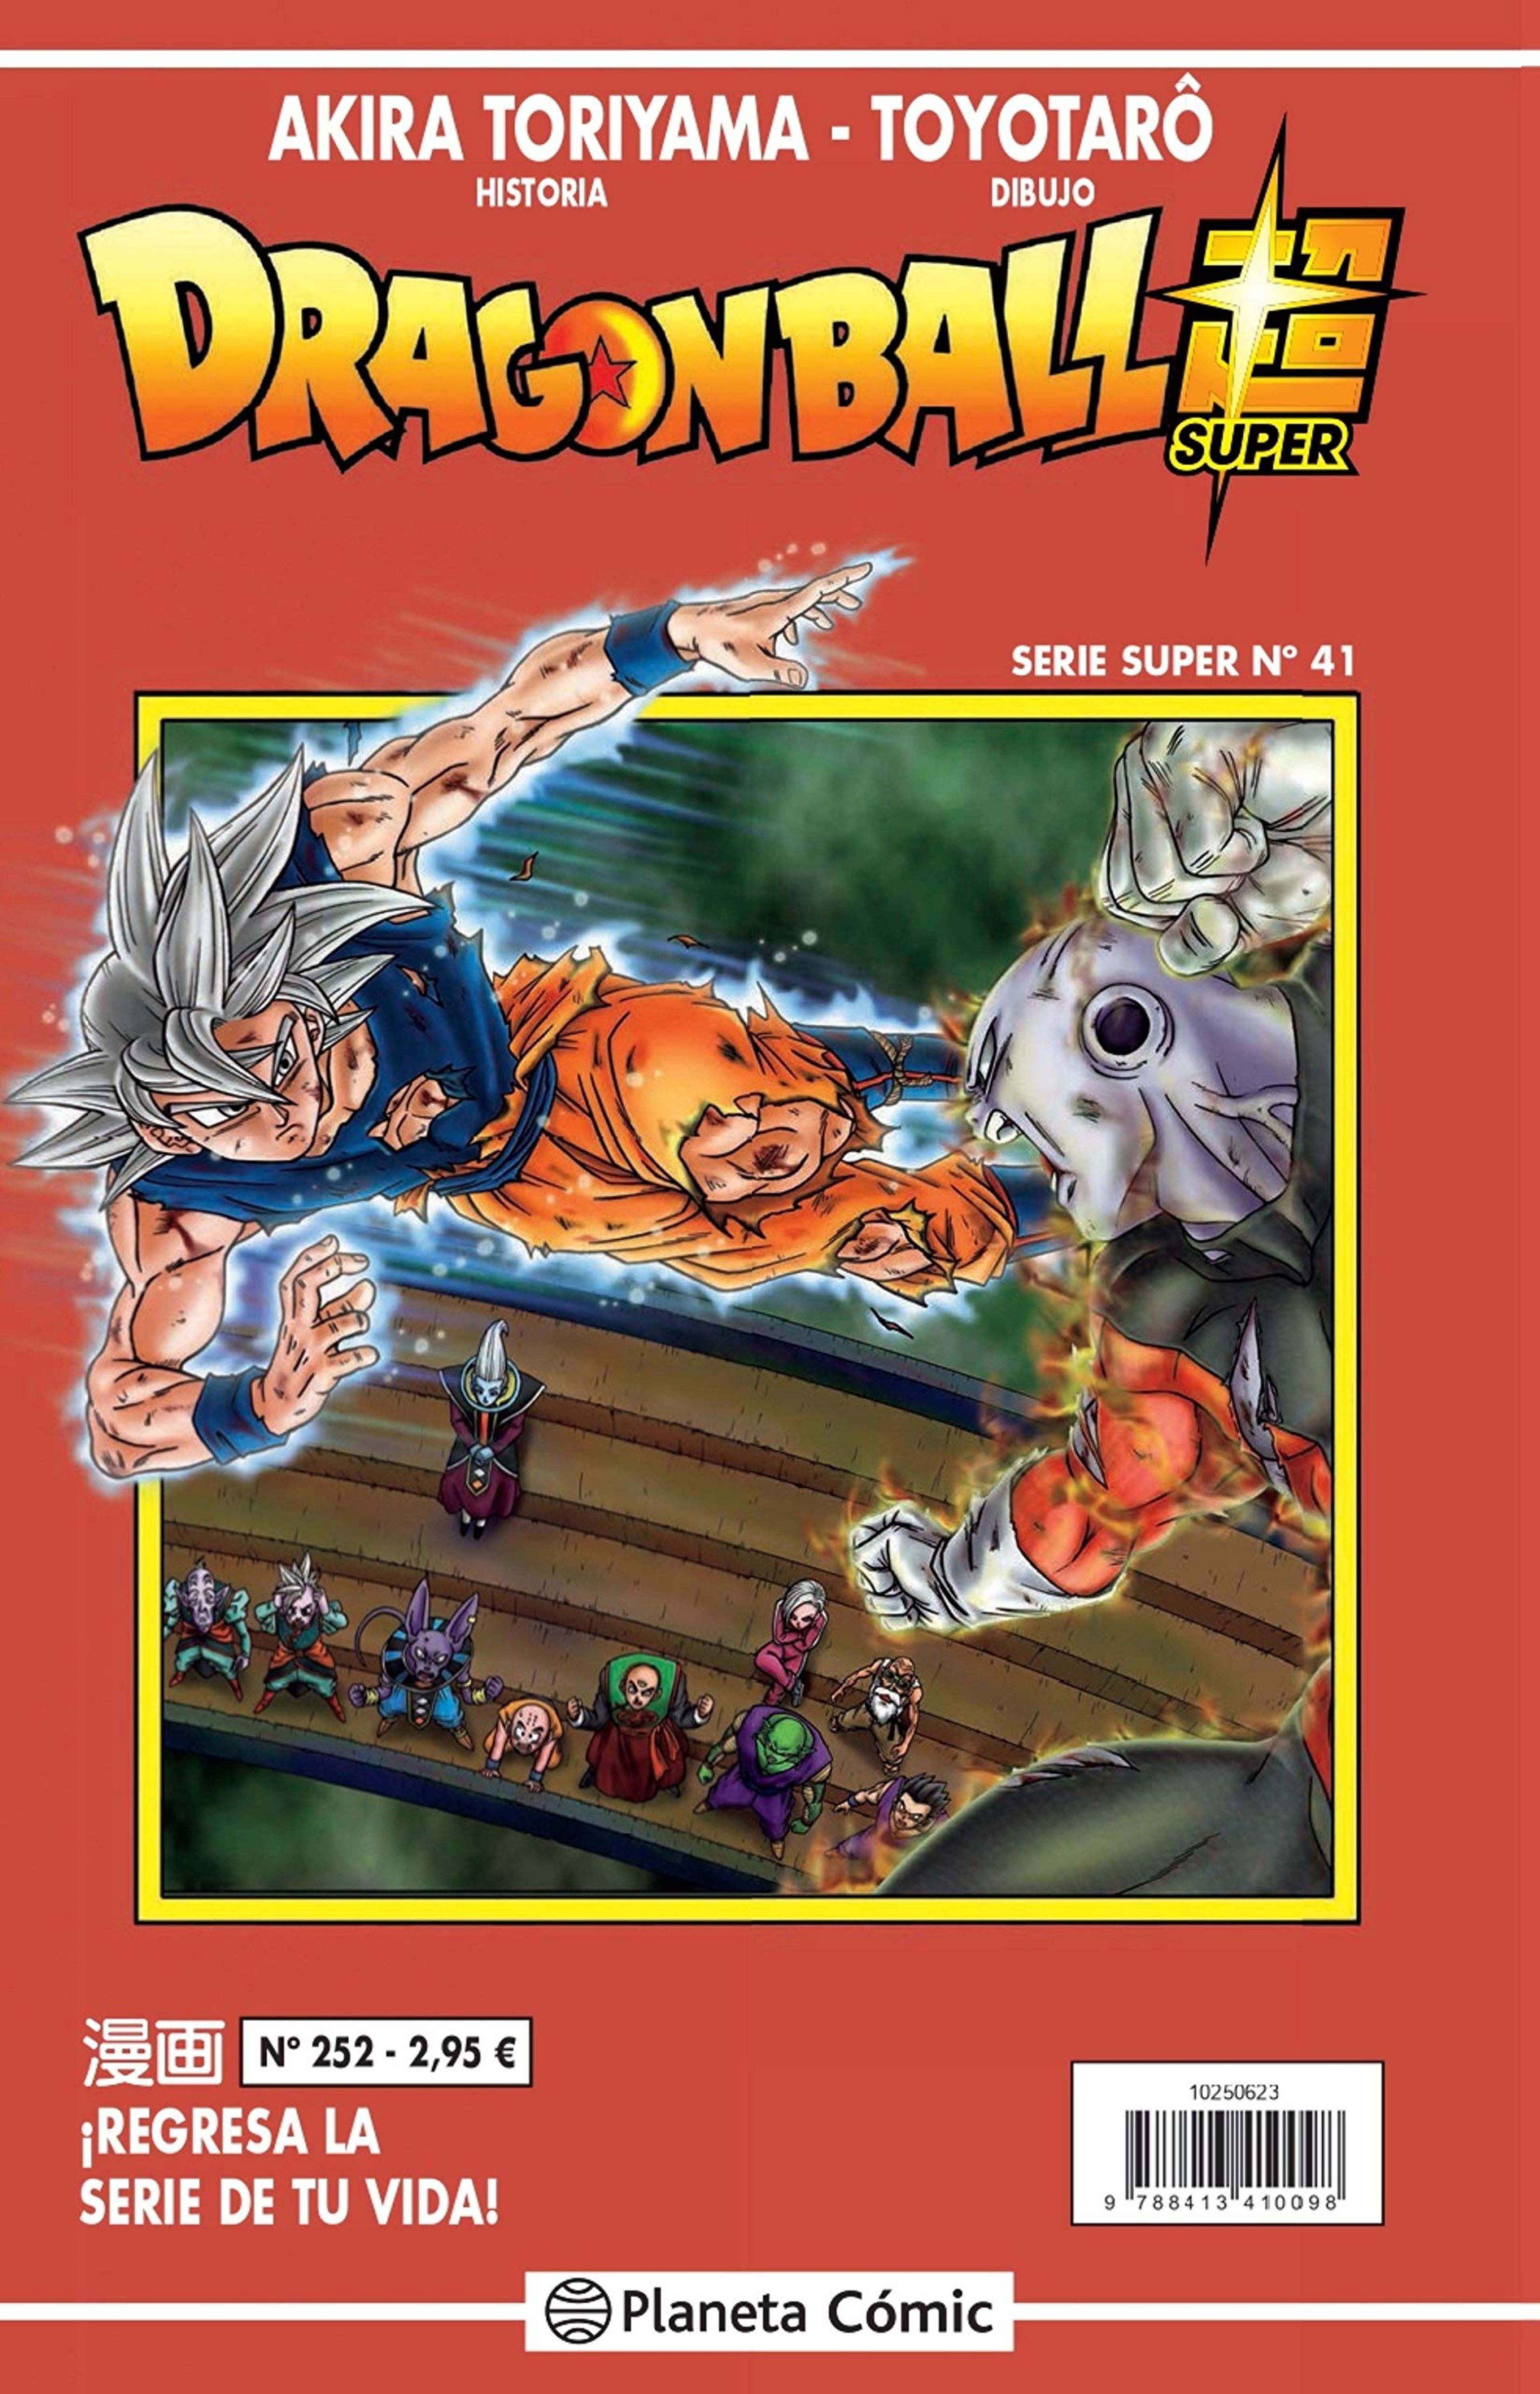 Dragon Ball Super - Se filtra la portada y fecha de lanzamiento del número 41 de la Serie Roja